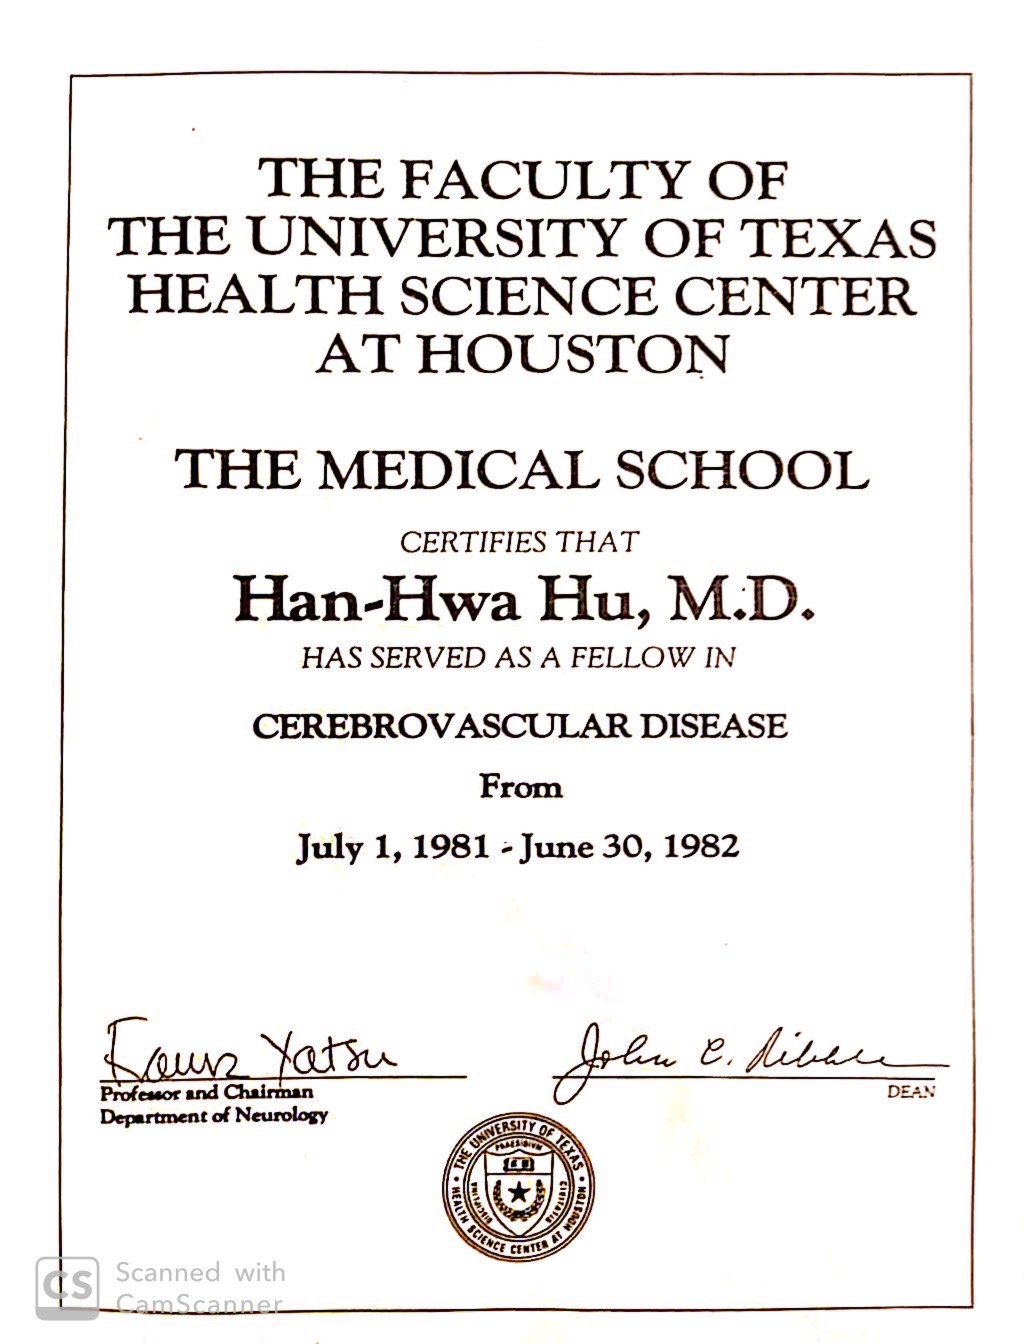 图片显示Hun-Hwa Hu Uthealth Houston休斯顿完成证书阅读德克萨斯大学健康科学中心的学院，医学院证明了1981年7月1日至1981年7月1日至1982年6月30日